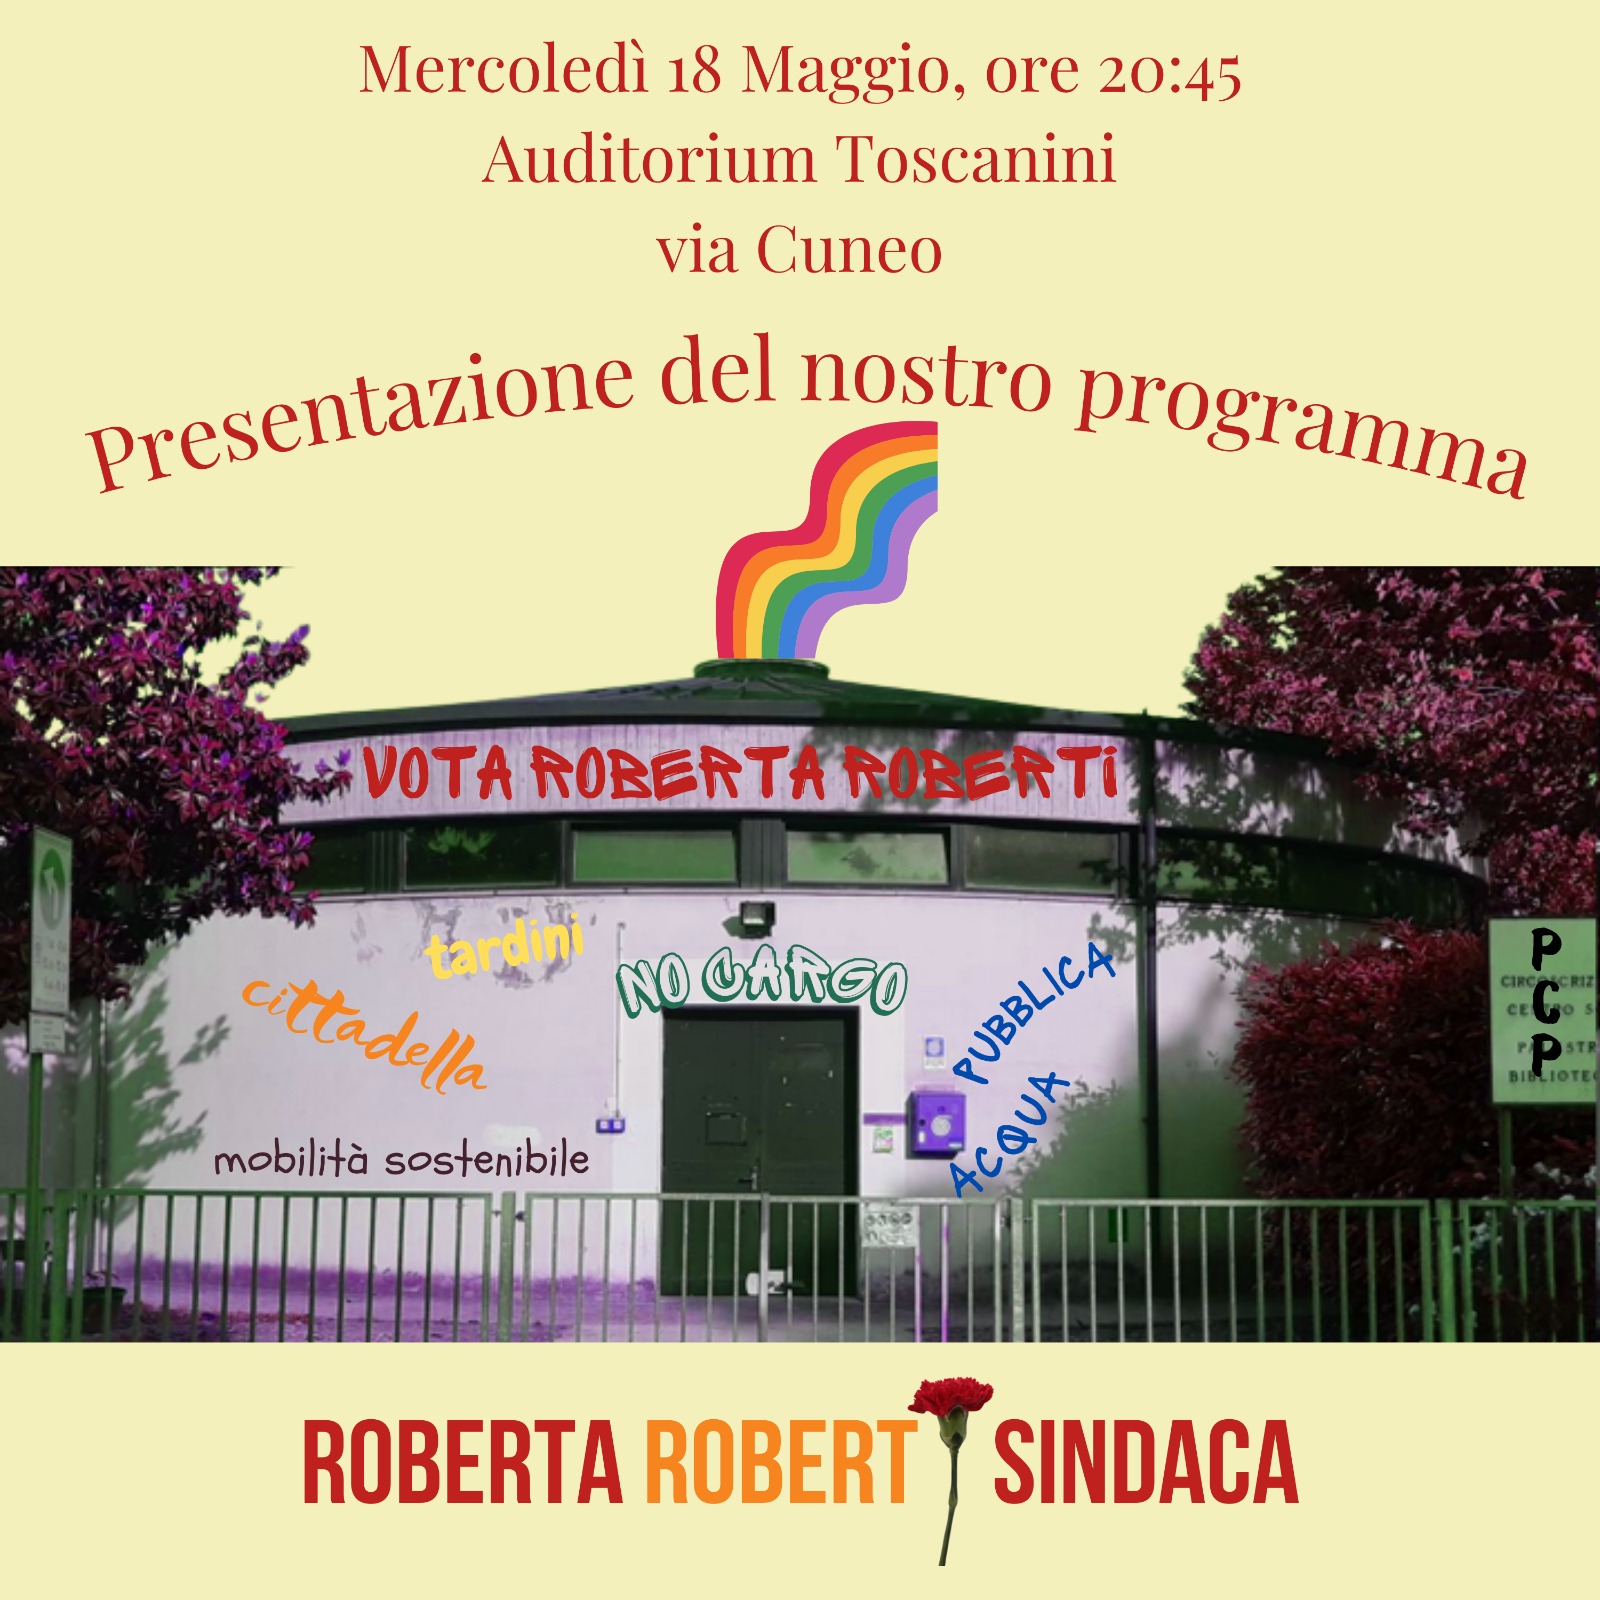 Al momento stai visualizzando 18 maggio, Parma Città Pubblica presenta il programma elettorale all’Auditorium Toscanini